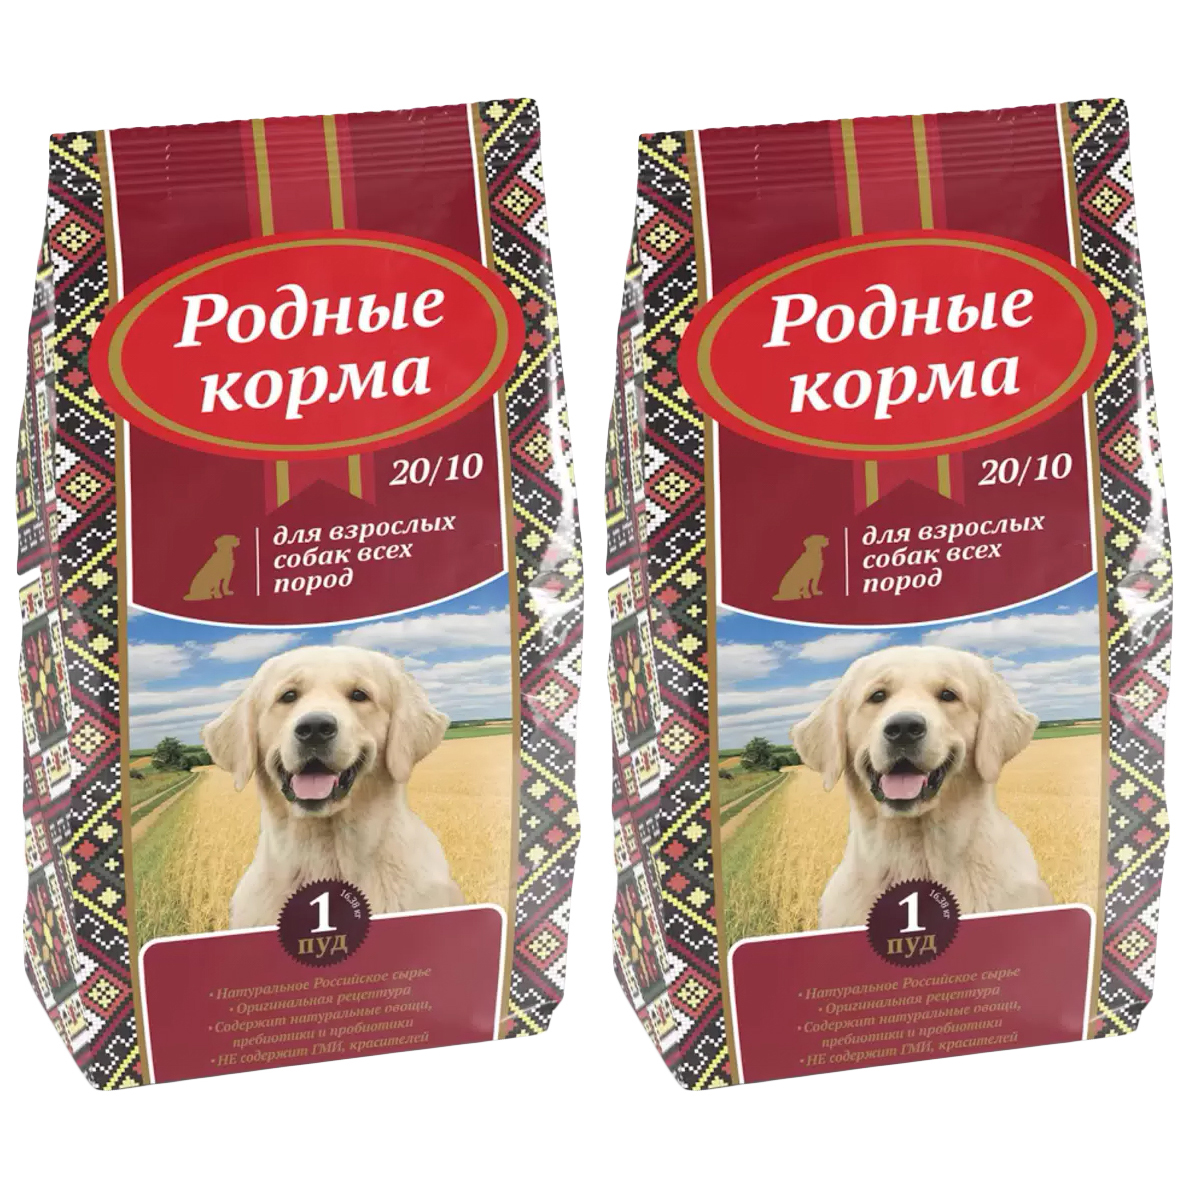 Сухой корм для взрослых собак всех пород Родные корма 20/10 с курицей, 2 шт по 16,38 кг